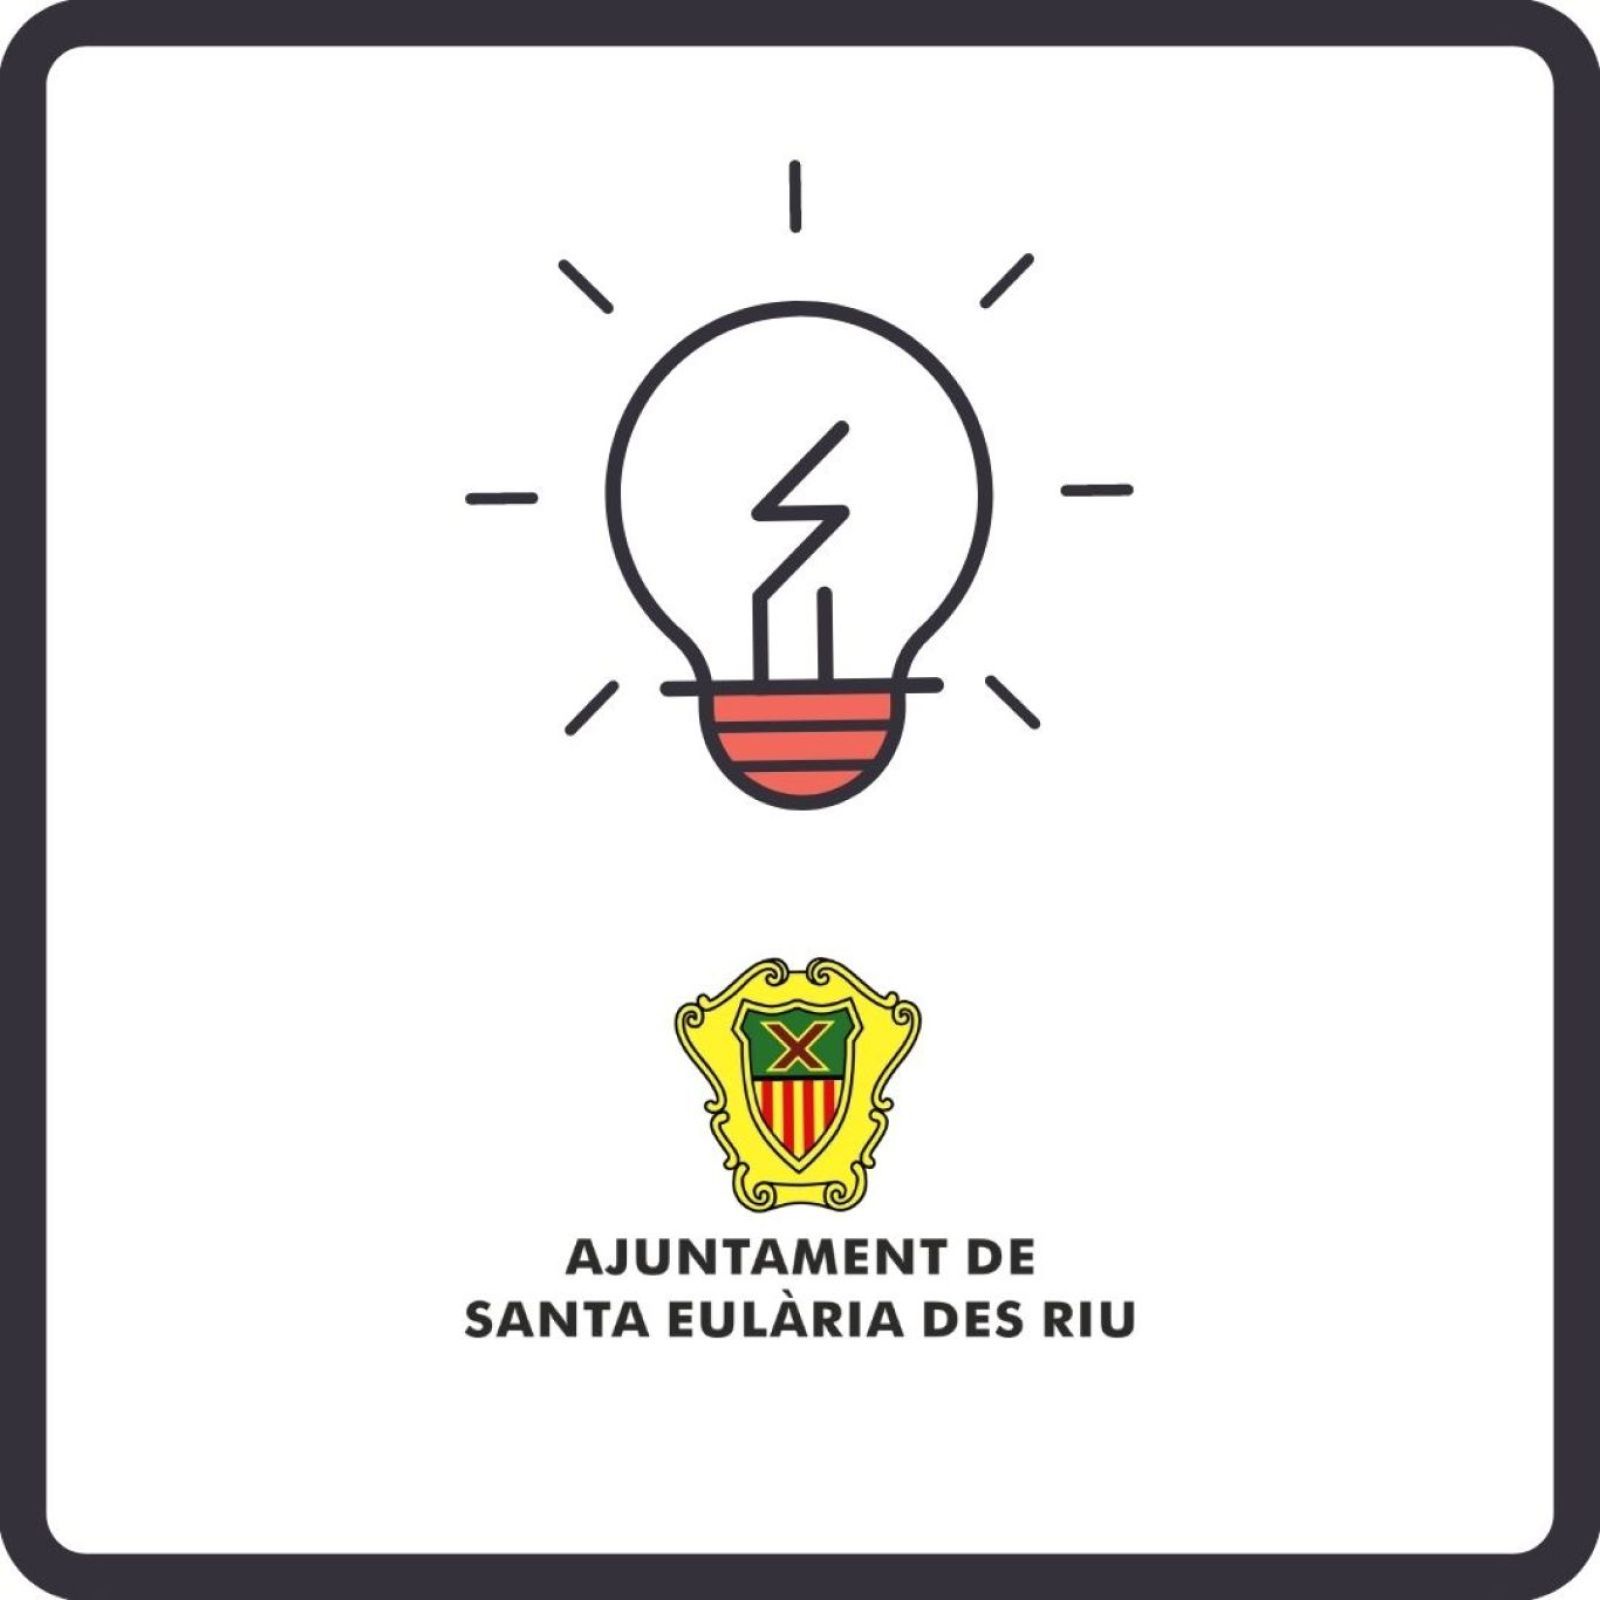 Corte temporal del suministro de energía eléctrica en diferentes zonas de Santa Eulària des Riu los días 11 y 13 de enero